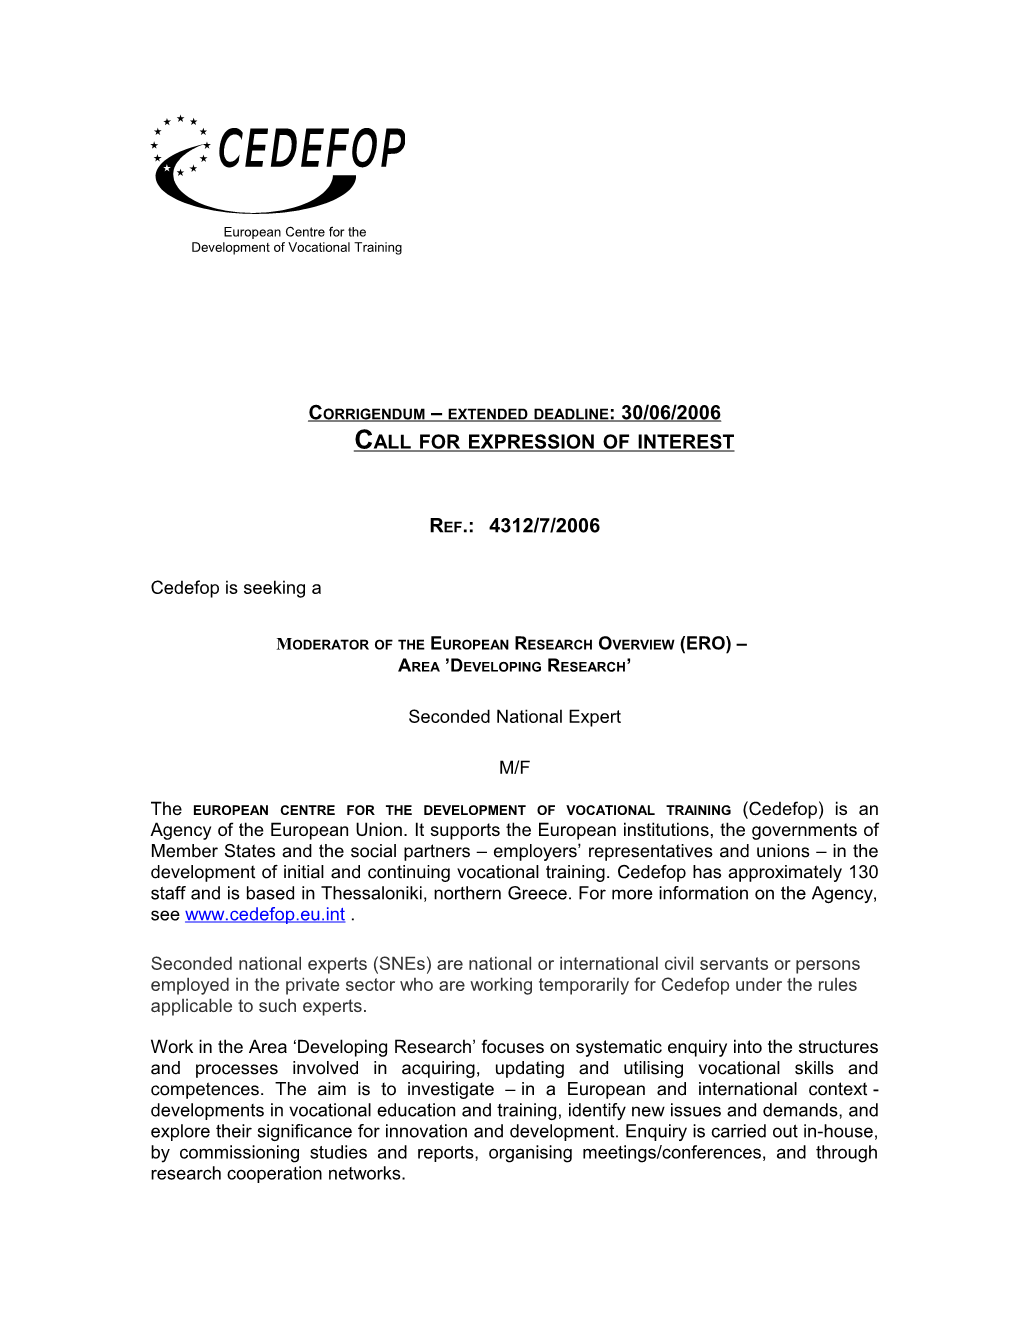 Corrigendum Extended Deadline: 30/06/2006Call for Expression of Interest